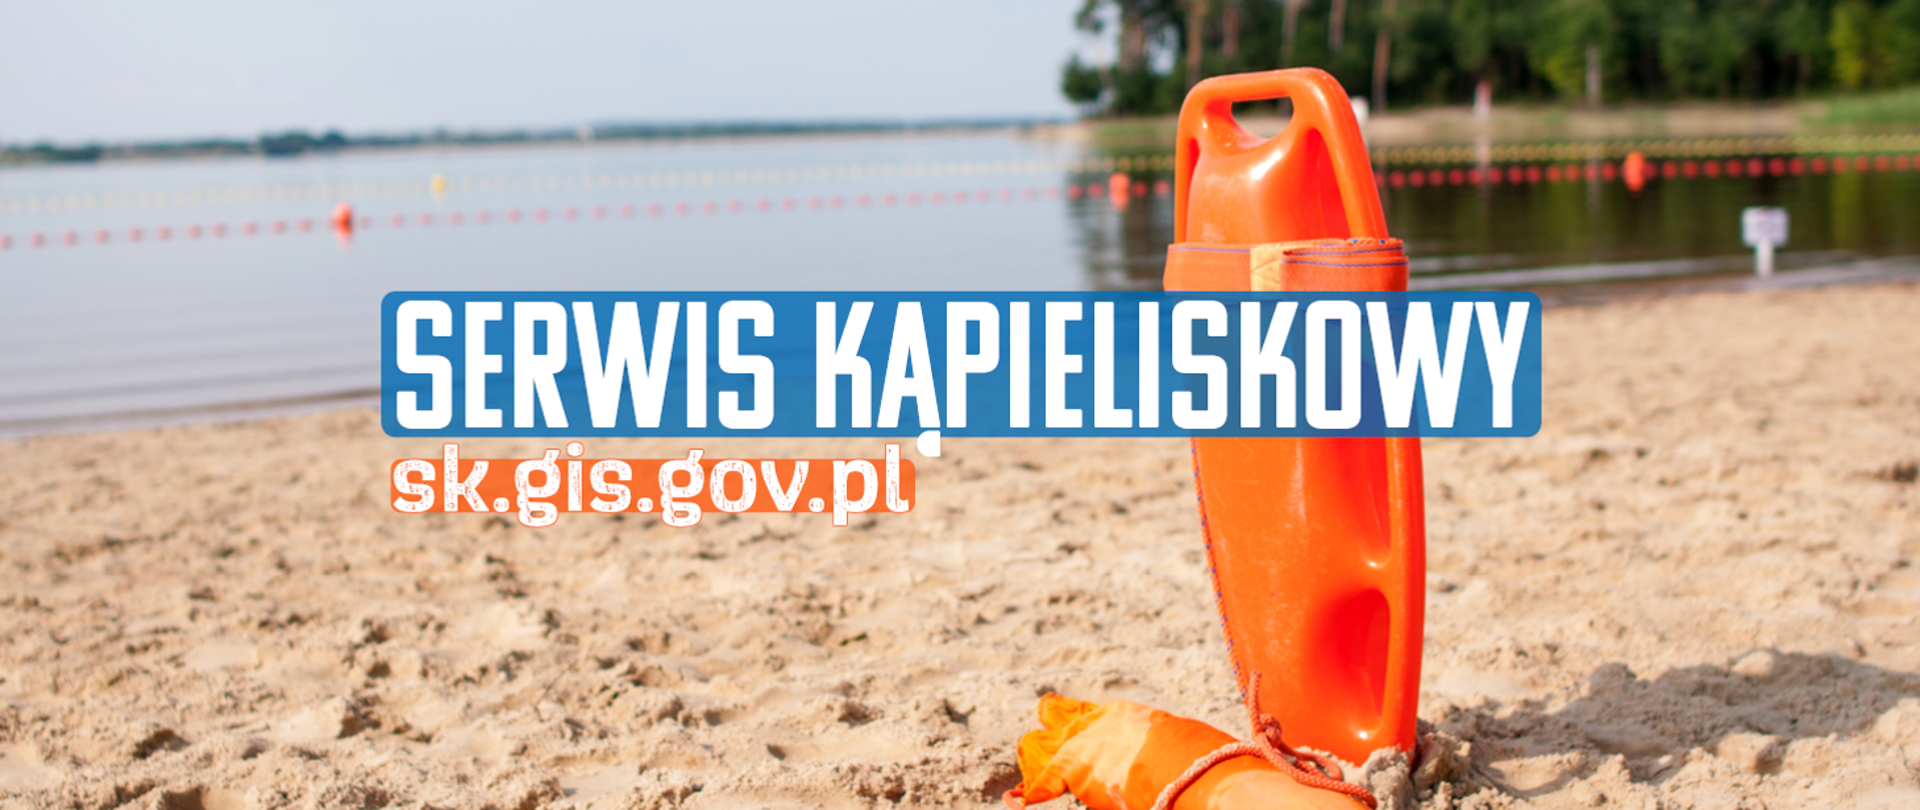 Zdjęcie jeziora z piaszczystą plażą na pierwszym planie pomarańczowa bojka, na środku napis Serwis kąpieliskowy sk.gis.gov.pl